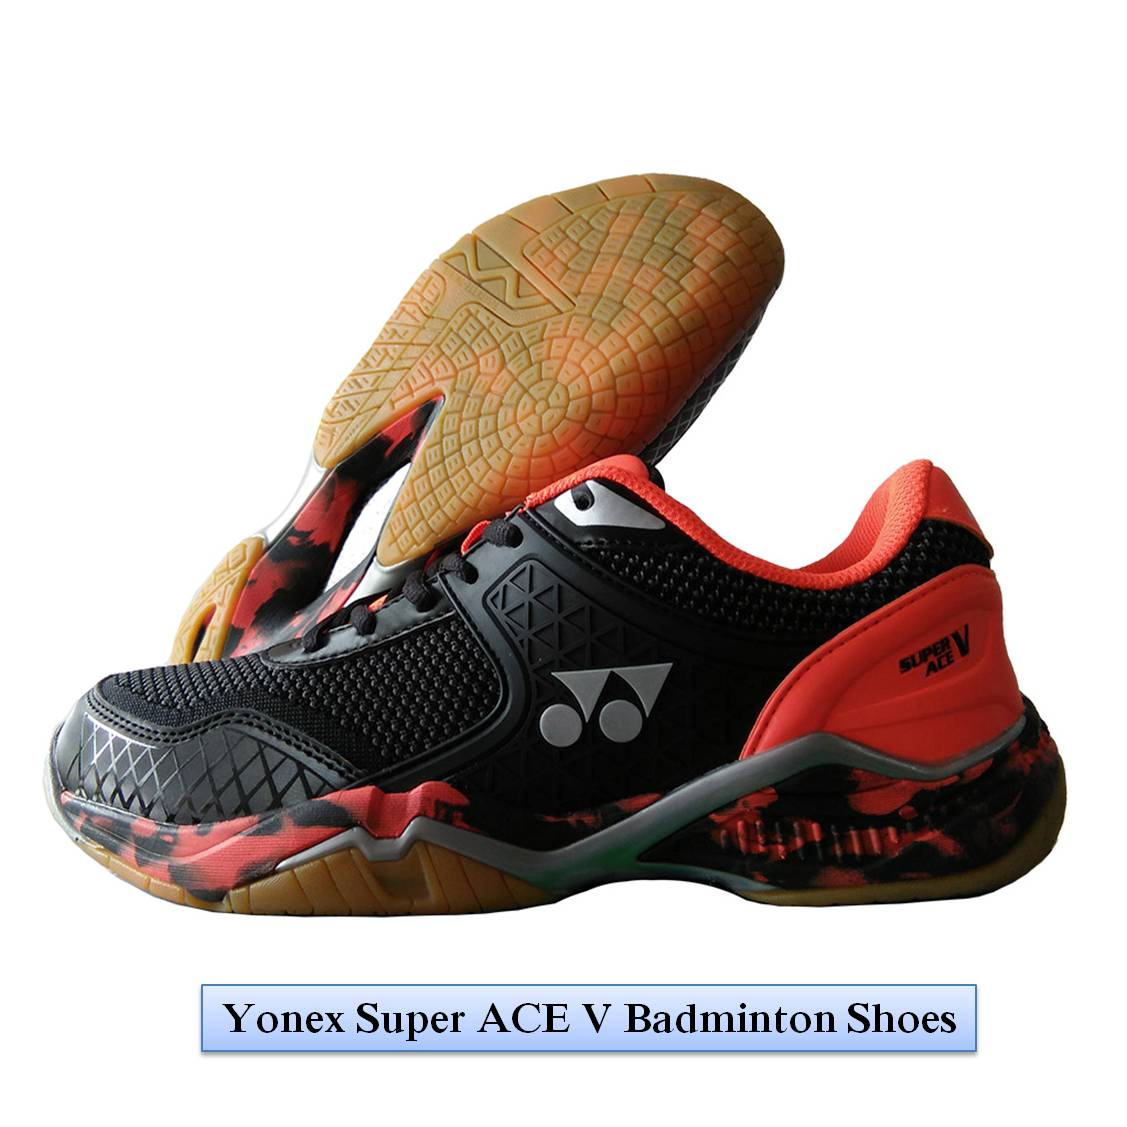 Yonex Super ACE V